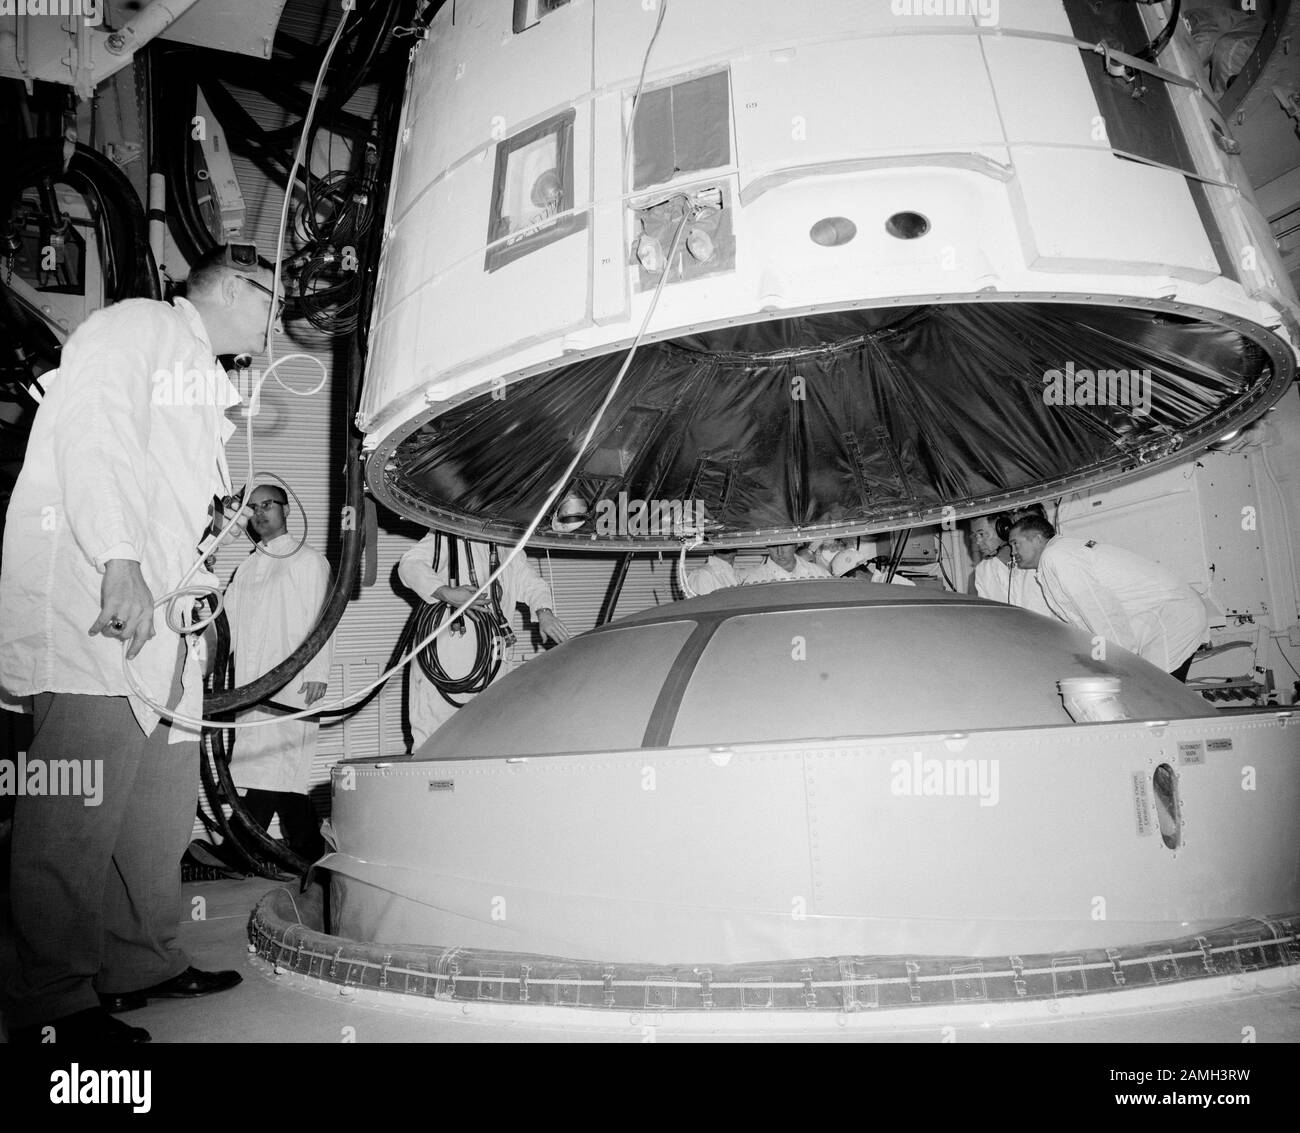 Il veicolo spaziale Gemini III è collegato al veicolo di lancio Titan II nella sala bianca di Pad 19 al Kennedy Space Center, Merritt Island, Florida, Stati Uniti, febbraio 1965. Immagine gentilmente concessa dalla NASA. () Foto Stock